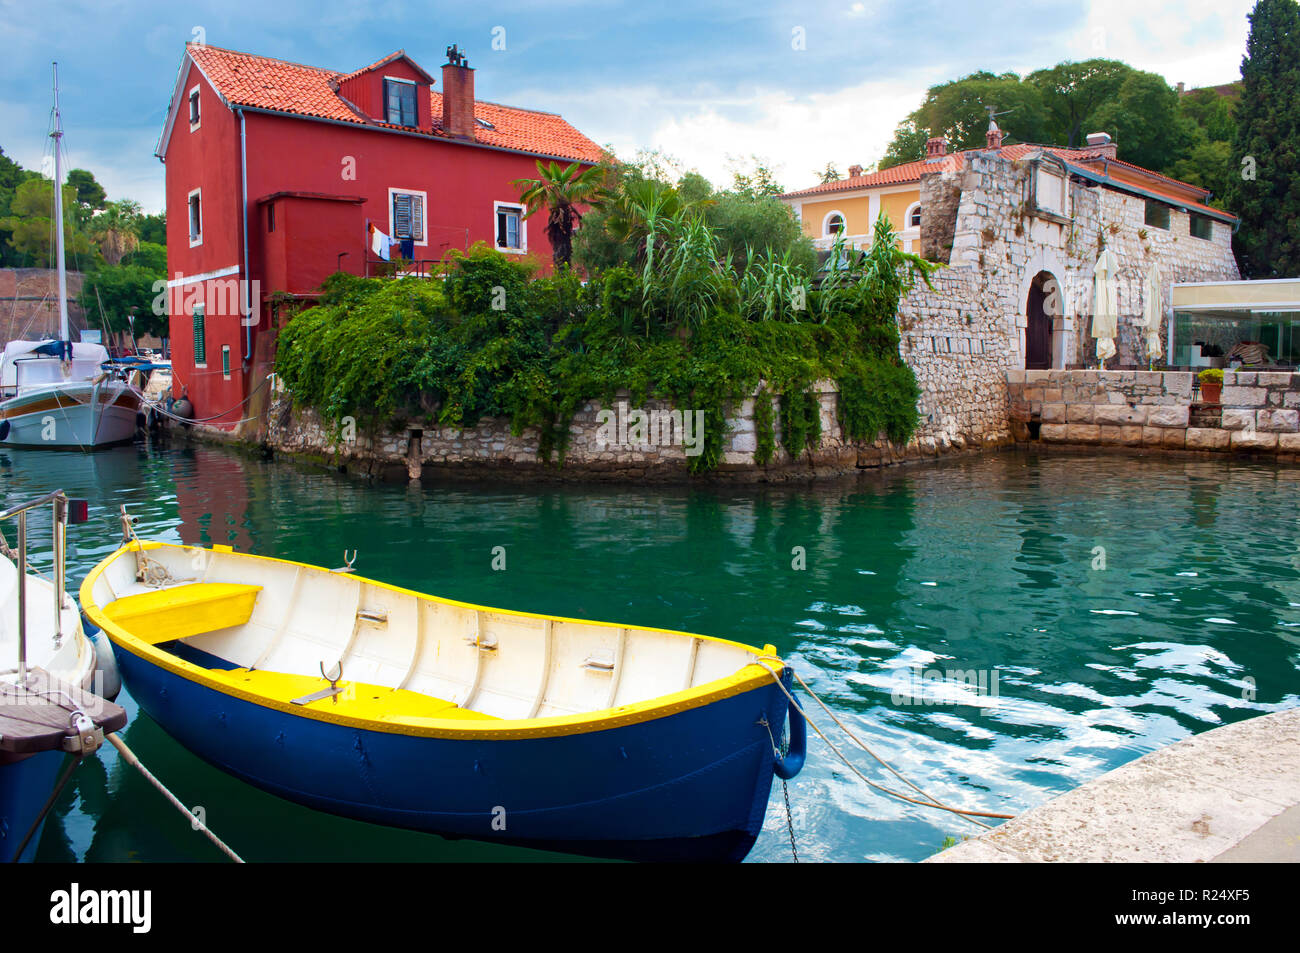 Ambiance pittoresque ville de Zadar, Croatie. Maison Rouge parmi le feuillage lierre vert près de l'eau émeraude où un bateau bleu et jaune et plusieurs bateaux sont fl Banque D'Images